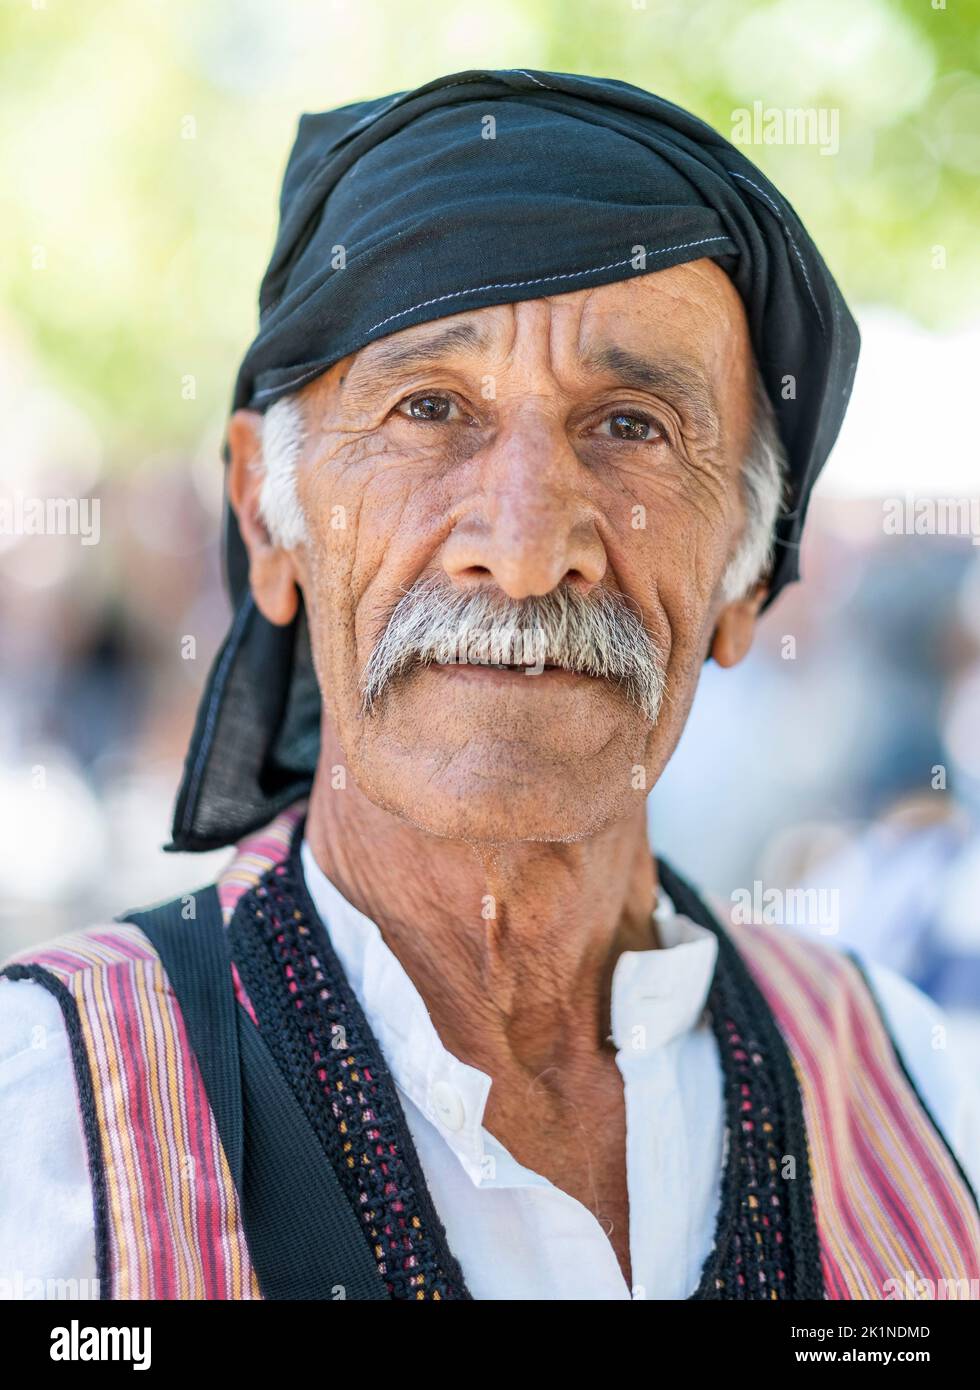 Retrato de un chipriota vestido tradicional en el Festival Rural de Statos-Agios Fotios, región de Paphos, Chipre. Foto de stock